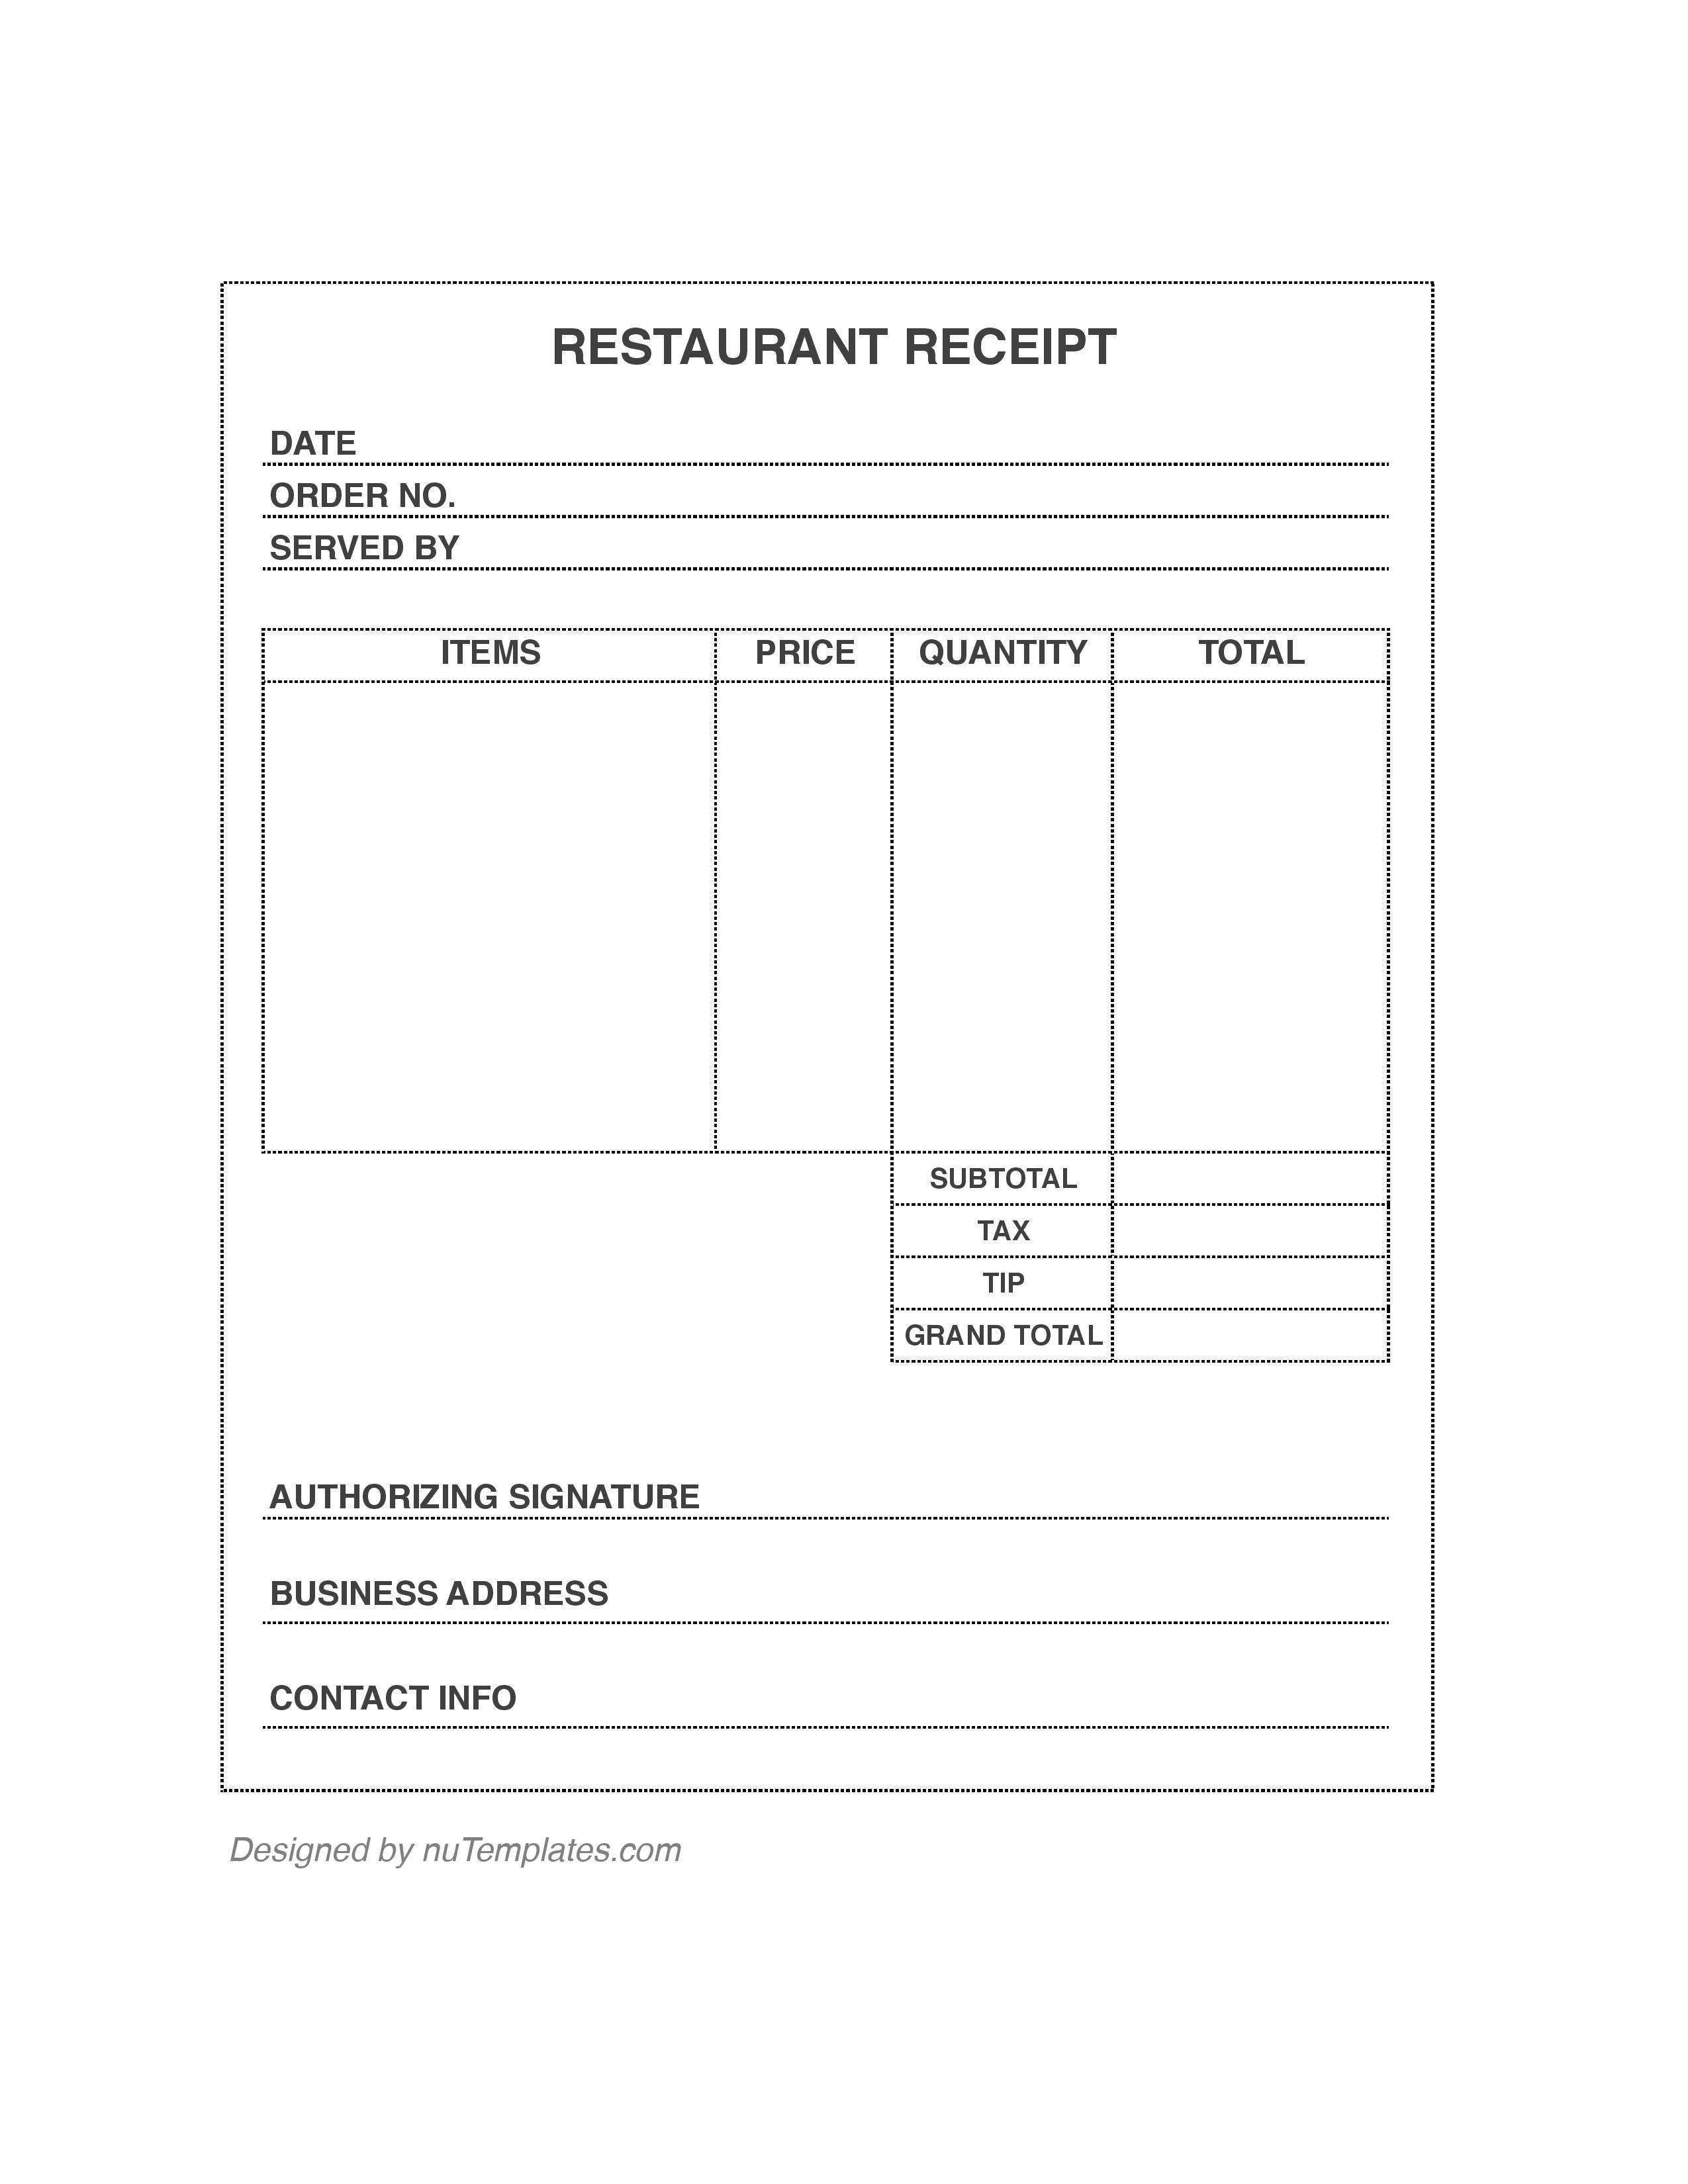 Restaurant Receipt Template